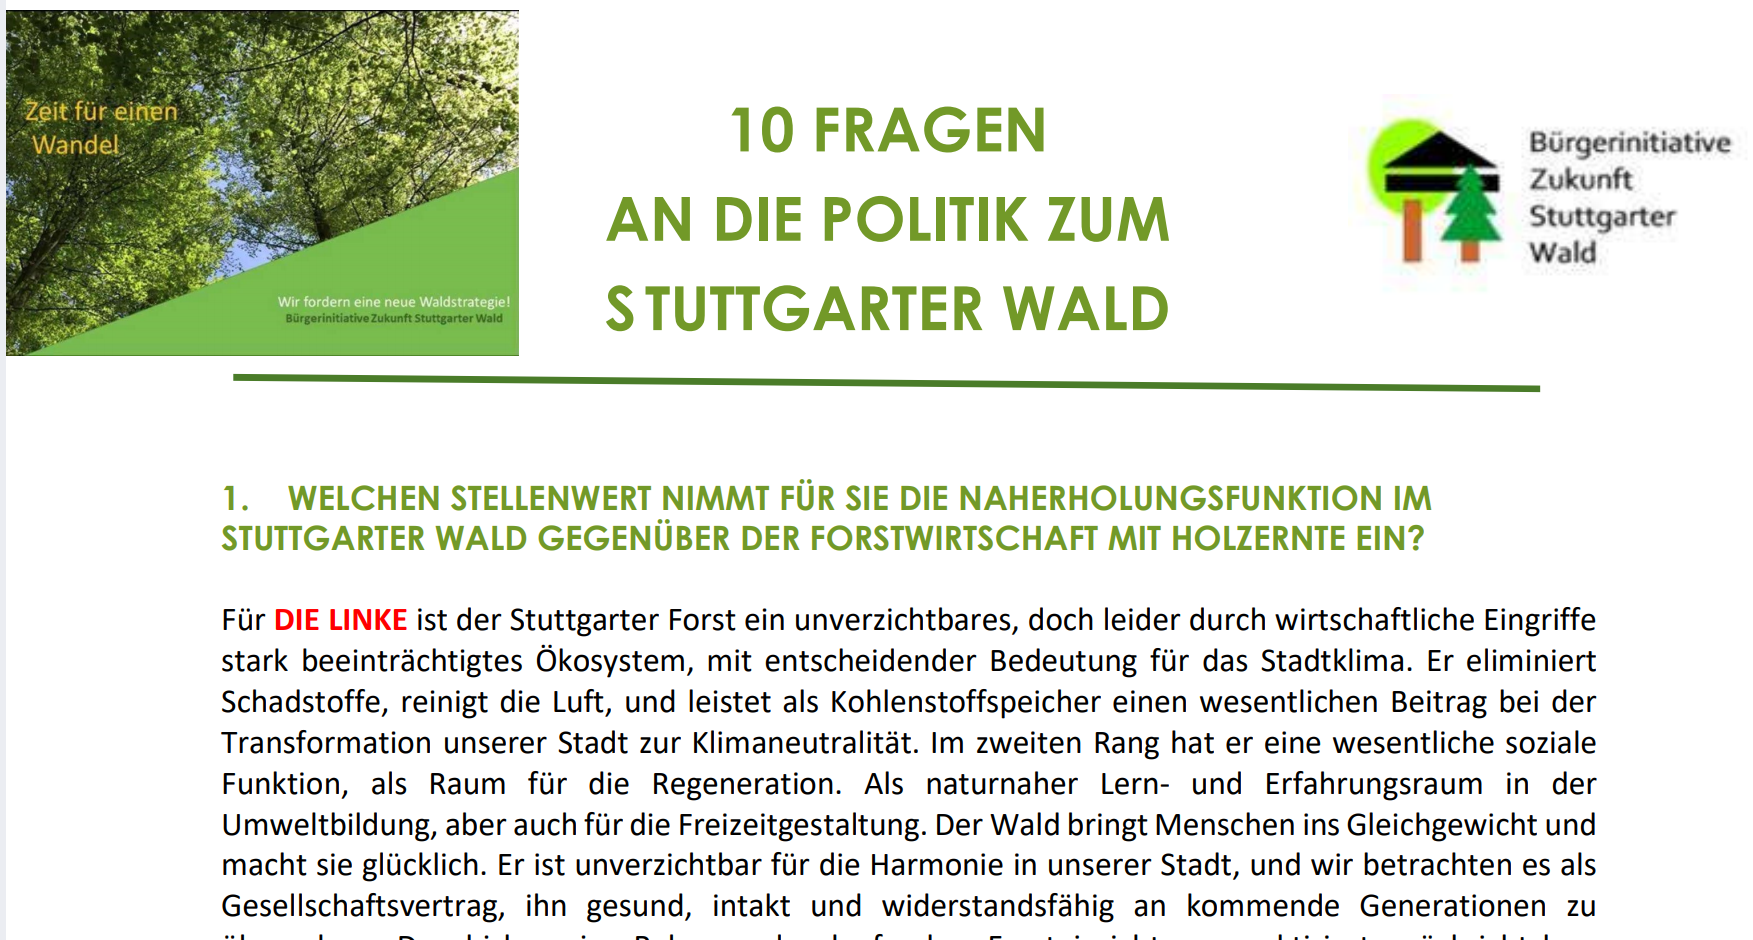 10 Fragen zum Stuttgarter - Wald - wie die Parteien im Gemeinderat noch vor Kurzem zum Wald Stellung bezogen haben!